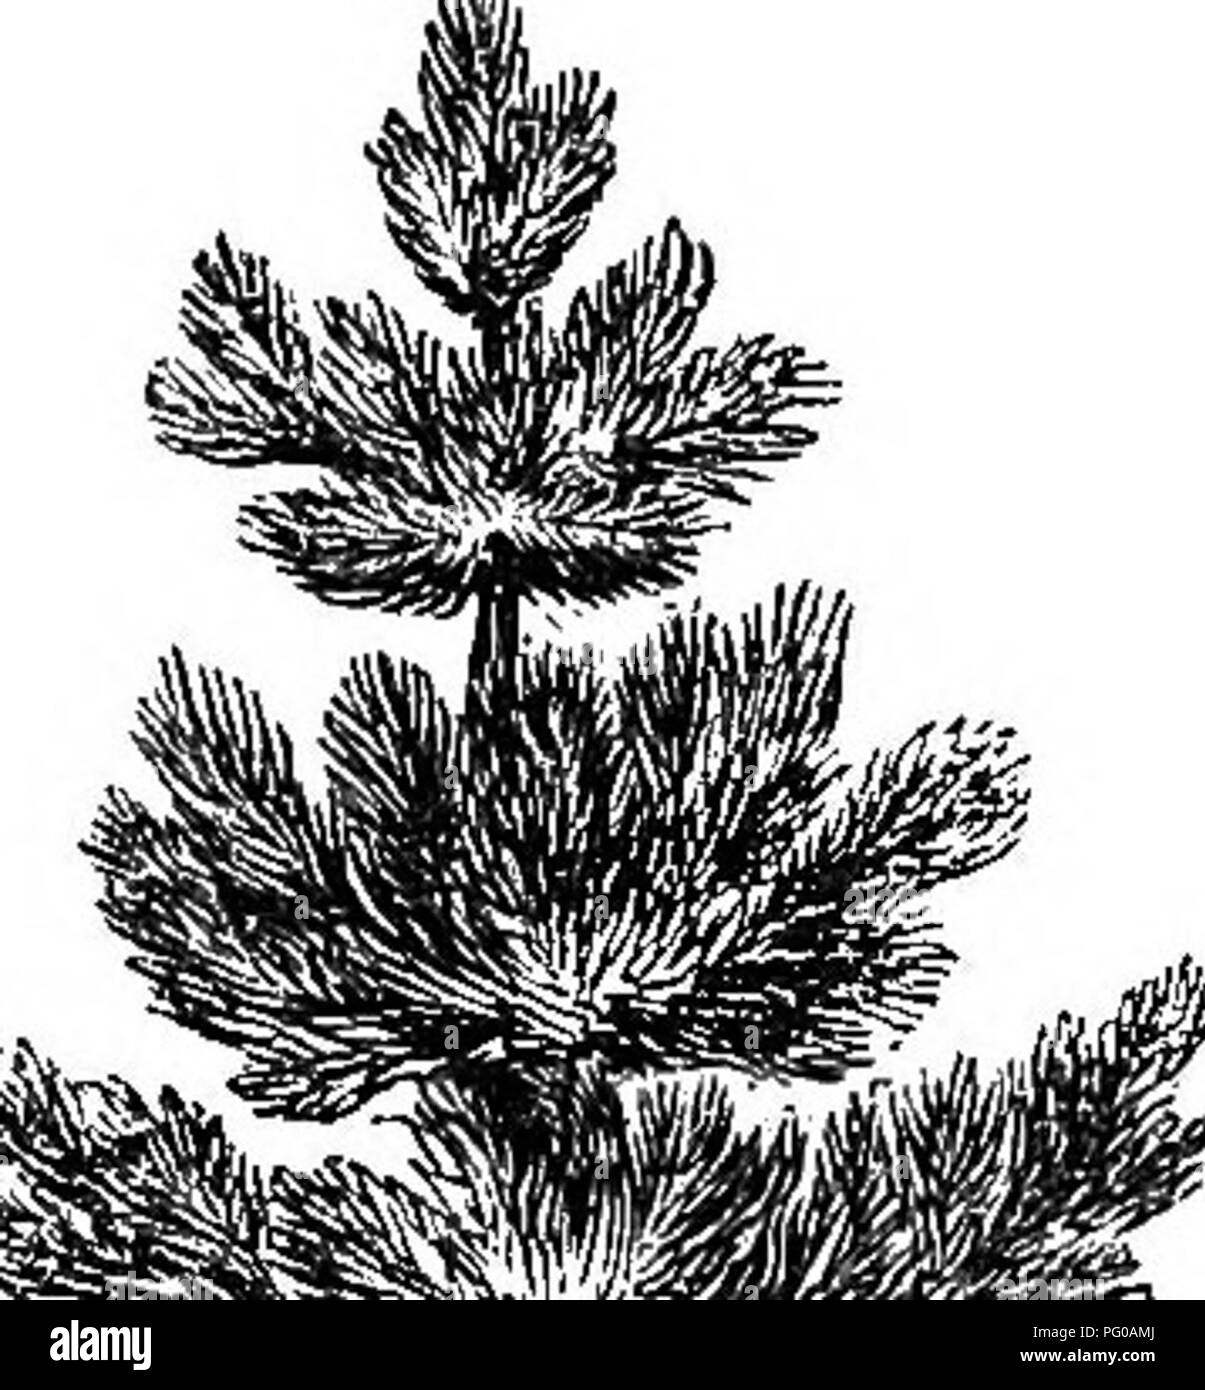 . Popolare di latifoglie e sempreverdi alberi ed arbusti, per piantare in parchi, giardini, cimiteri, ecc, ecc. Sempreverdi; gli alberi, arbusti. EVEKGEEEN TEEES. 61 Come un singolo albero, anche, su di un prato è sempre bello; e, quando lo scenario verrà ammesso, gruppi di pino questa con l'albero dei tulipani, Monte Ceneri, sanguinello, ecc., sono estremamente eifective. Vi è un pino meridionale-Pinus Australis-nativo della nostra. Si prega di notare che queste immagini vengono estratte dalla pagina sottoposta a scansione di immagini che possono essere state migliorate digitalmente per la leggibilità - Colorazione e aspetto di queste illustrazioni potrebbero non perfettamente resem Foto Stock